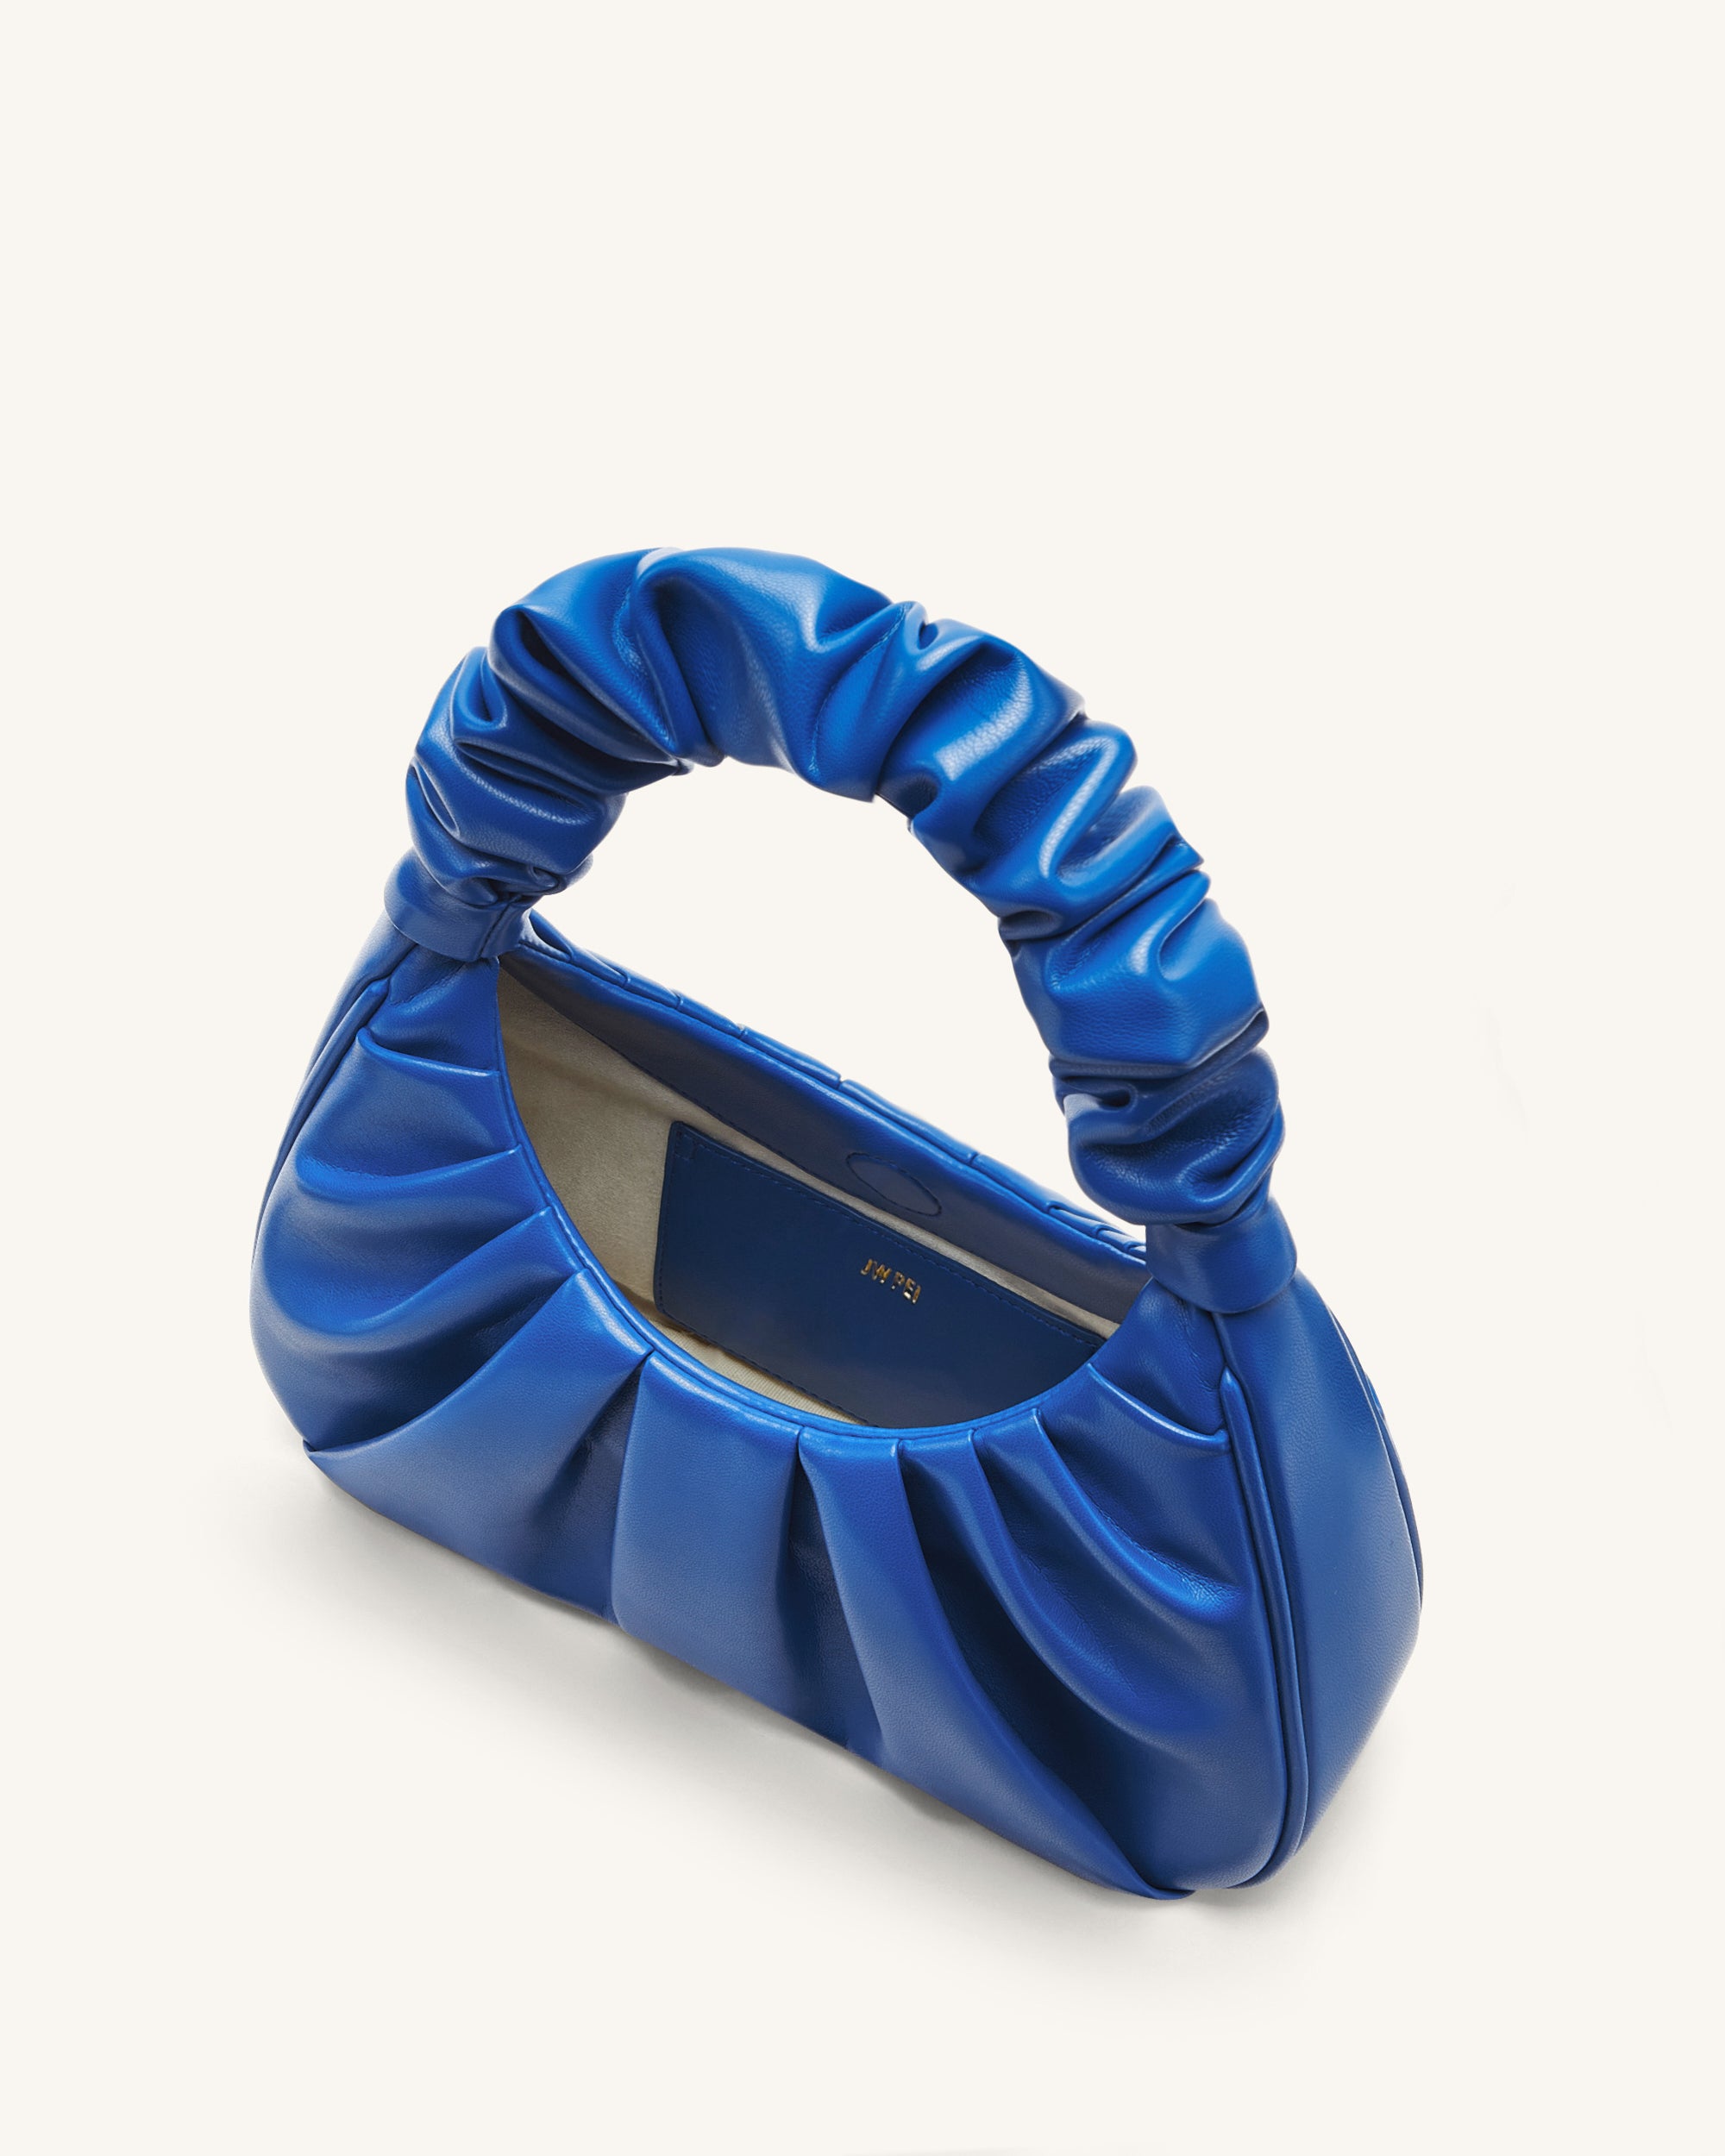 JW PEI Rantan Hobo Bag In Croc-embossed Leather in Blue